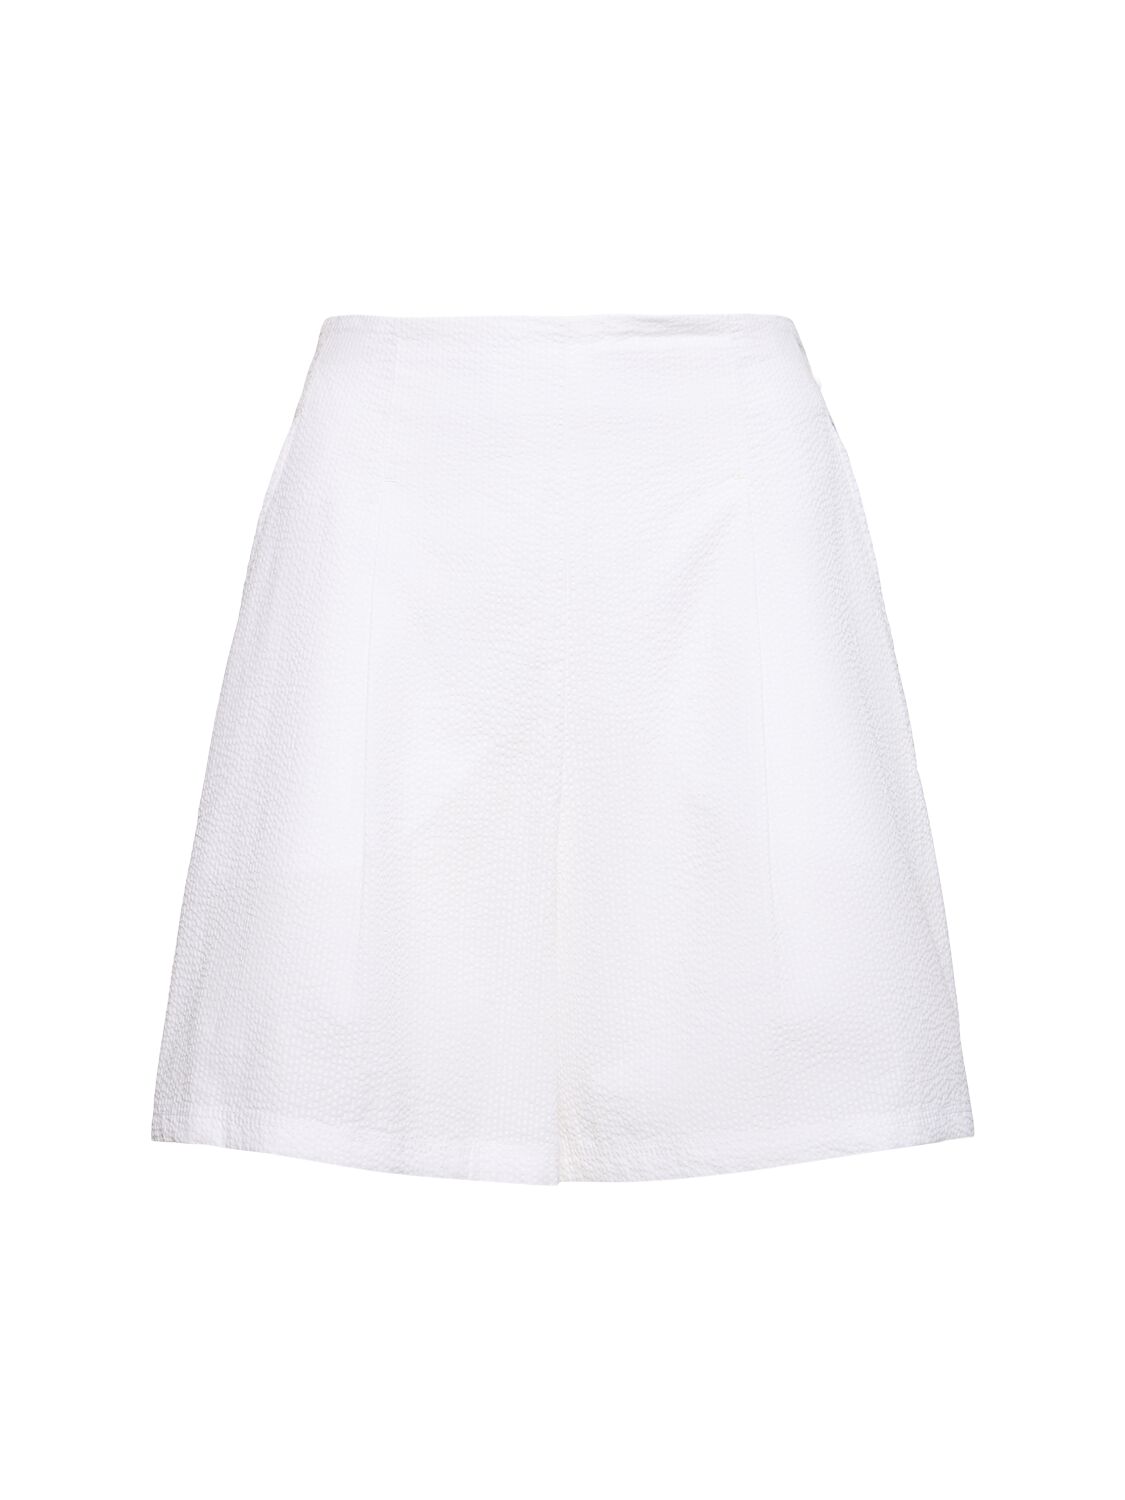 Max Mara Canale Seersucker Cotton Shorts In White